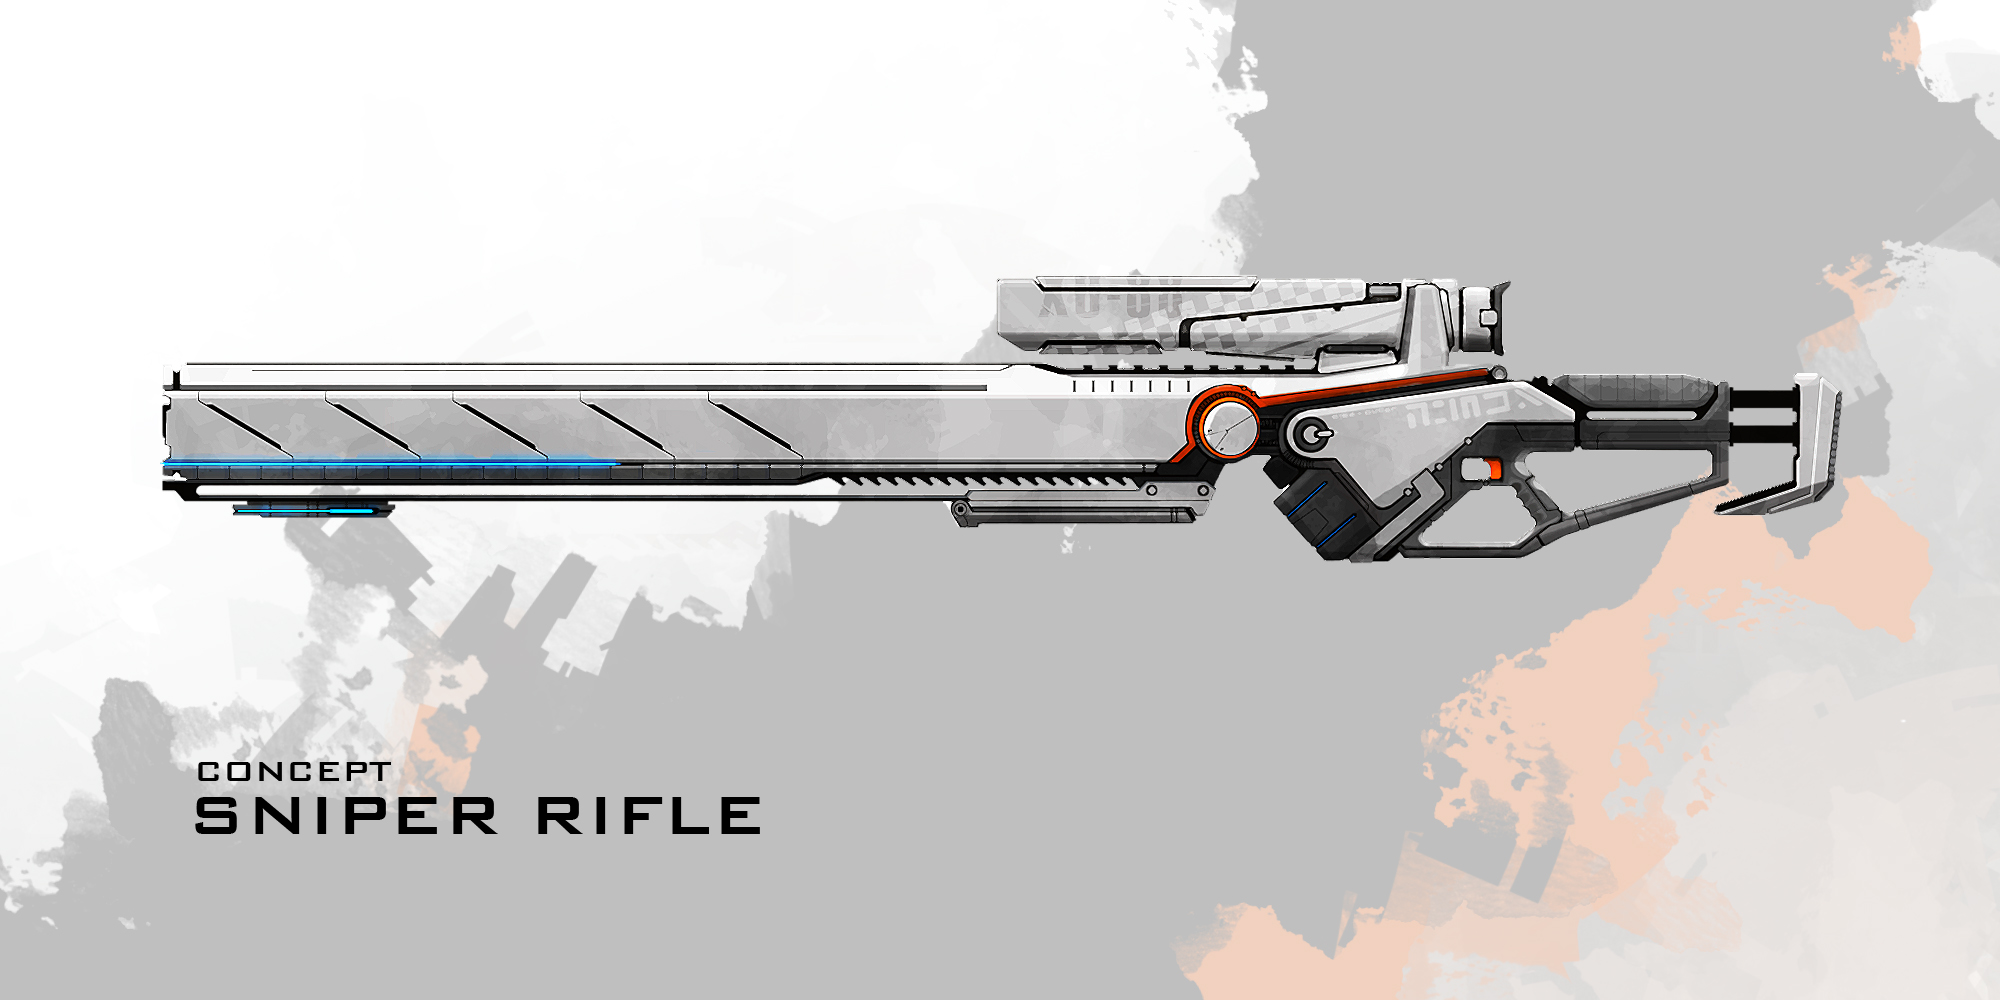 Sanctum 2 - Weapons - Sniper Rifle image - Mod DB - 2000 x 1000 jpeg 424kB